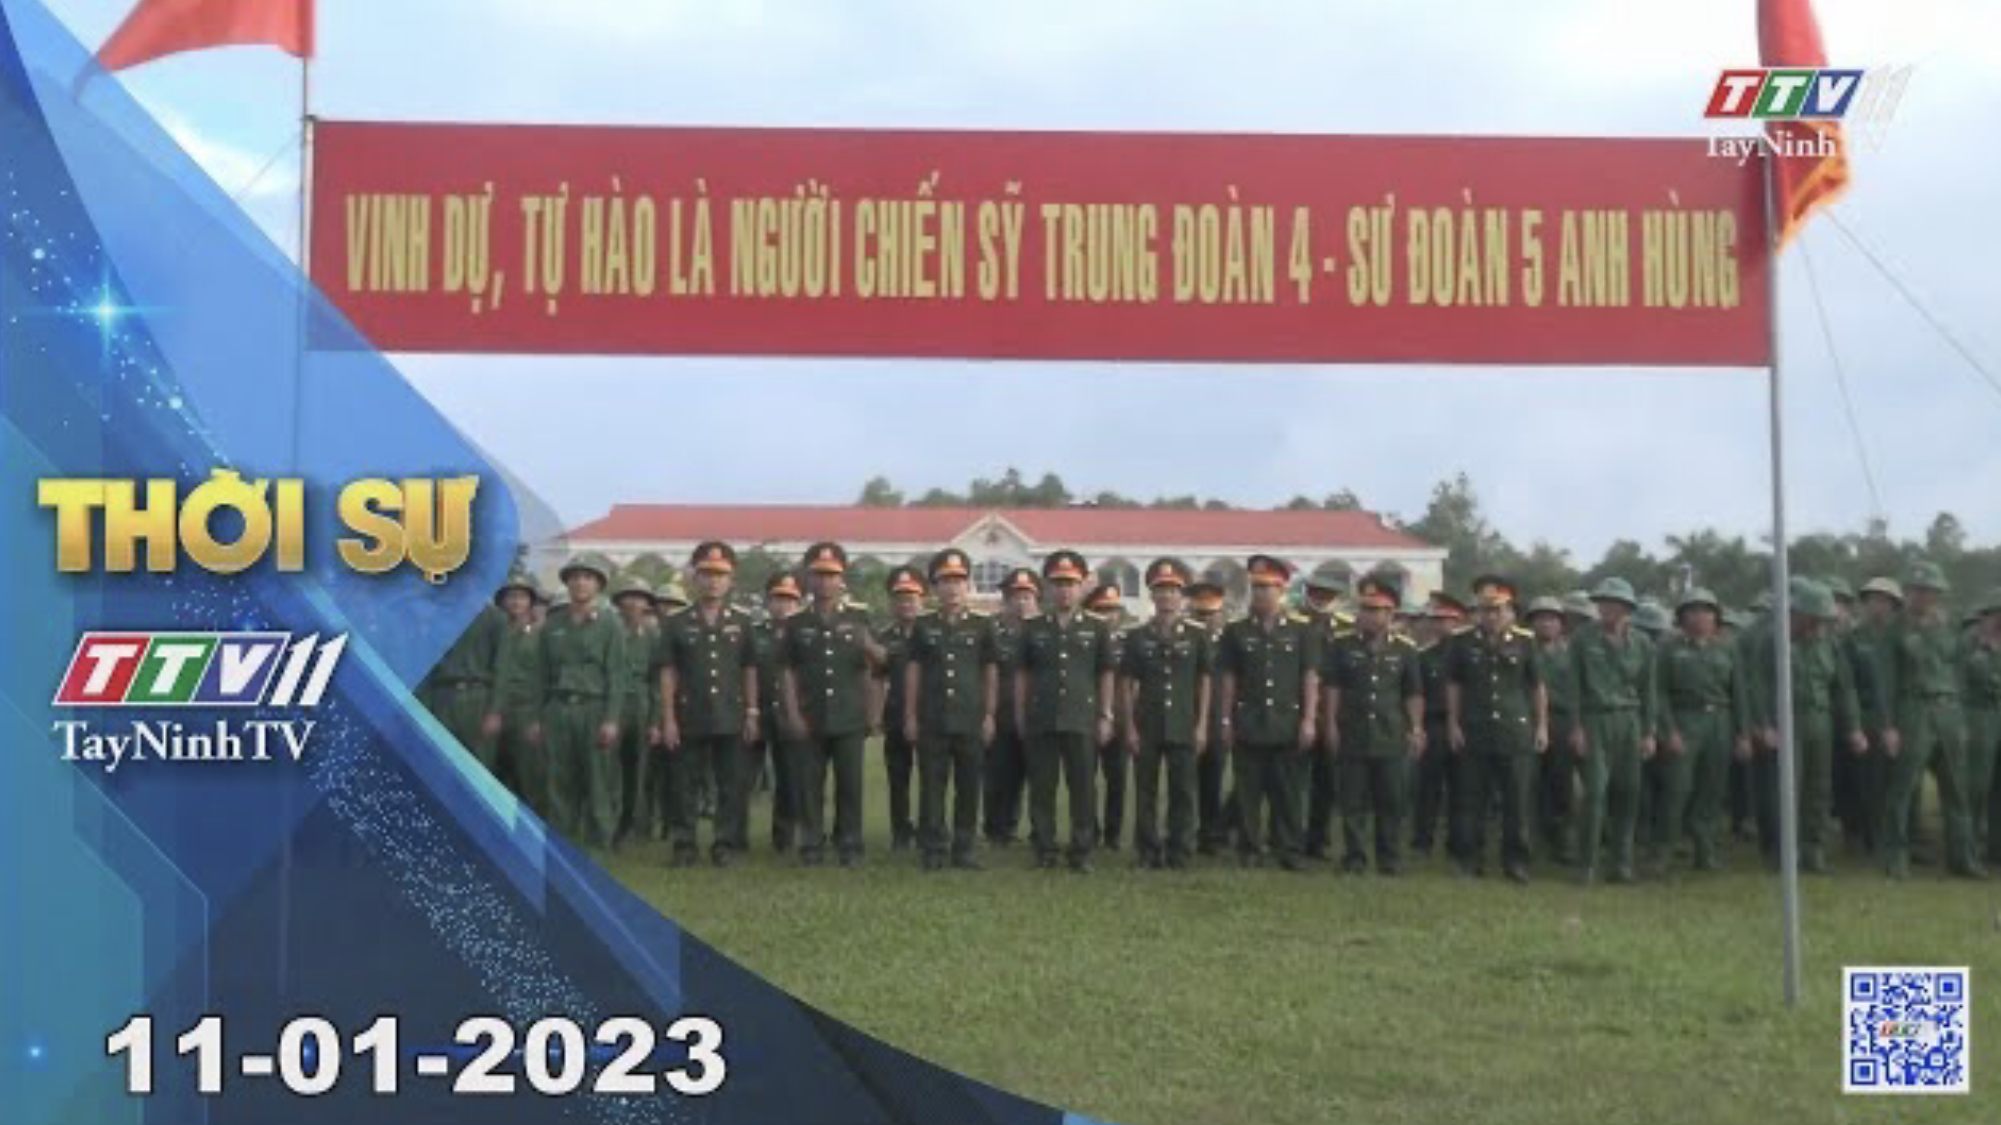 Thời sự Tây Ninh 11-01-2023 | Tin tức hôm nay | TayNinhTV